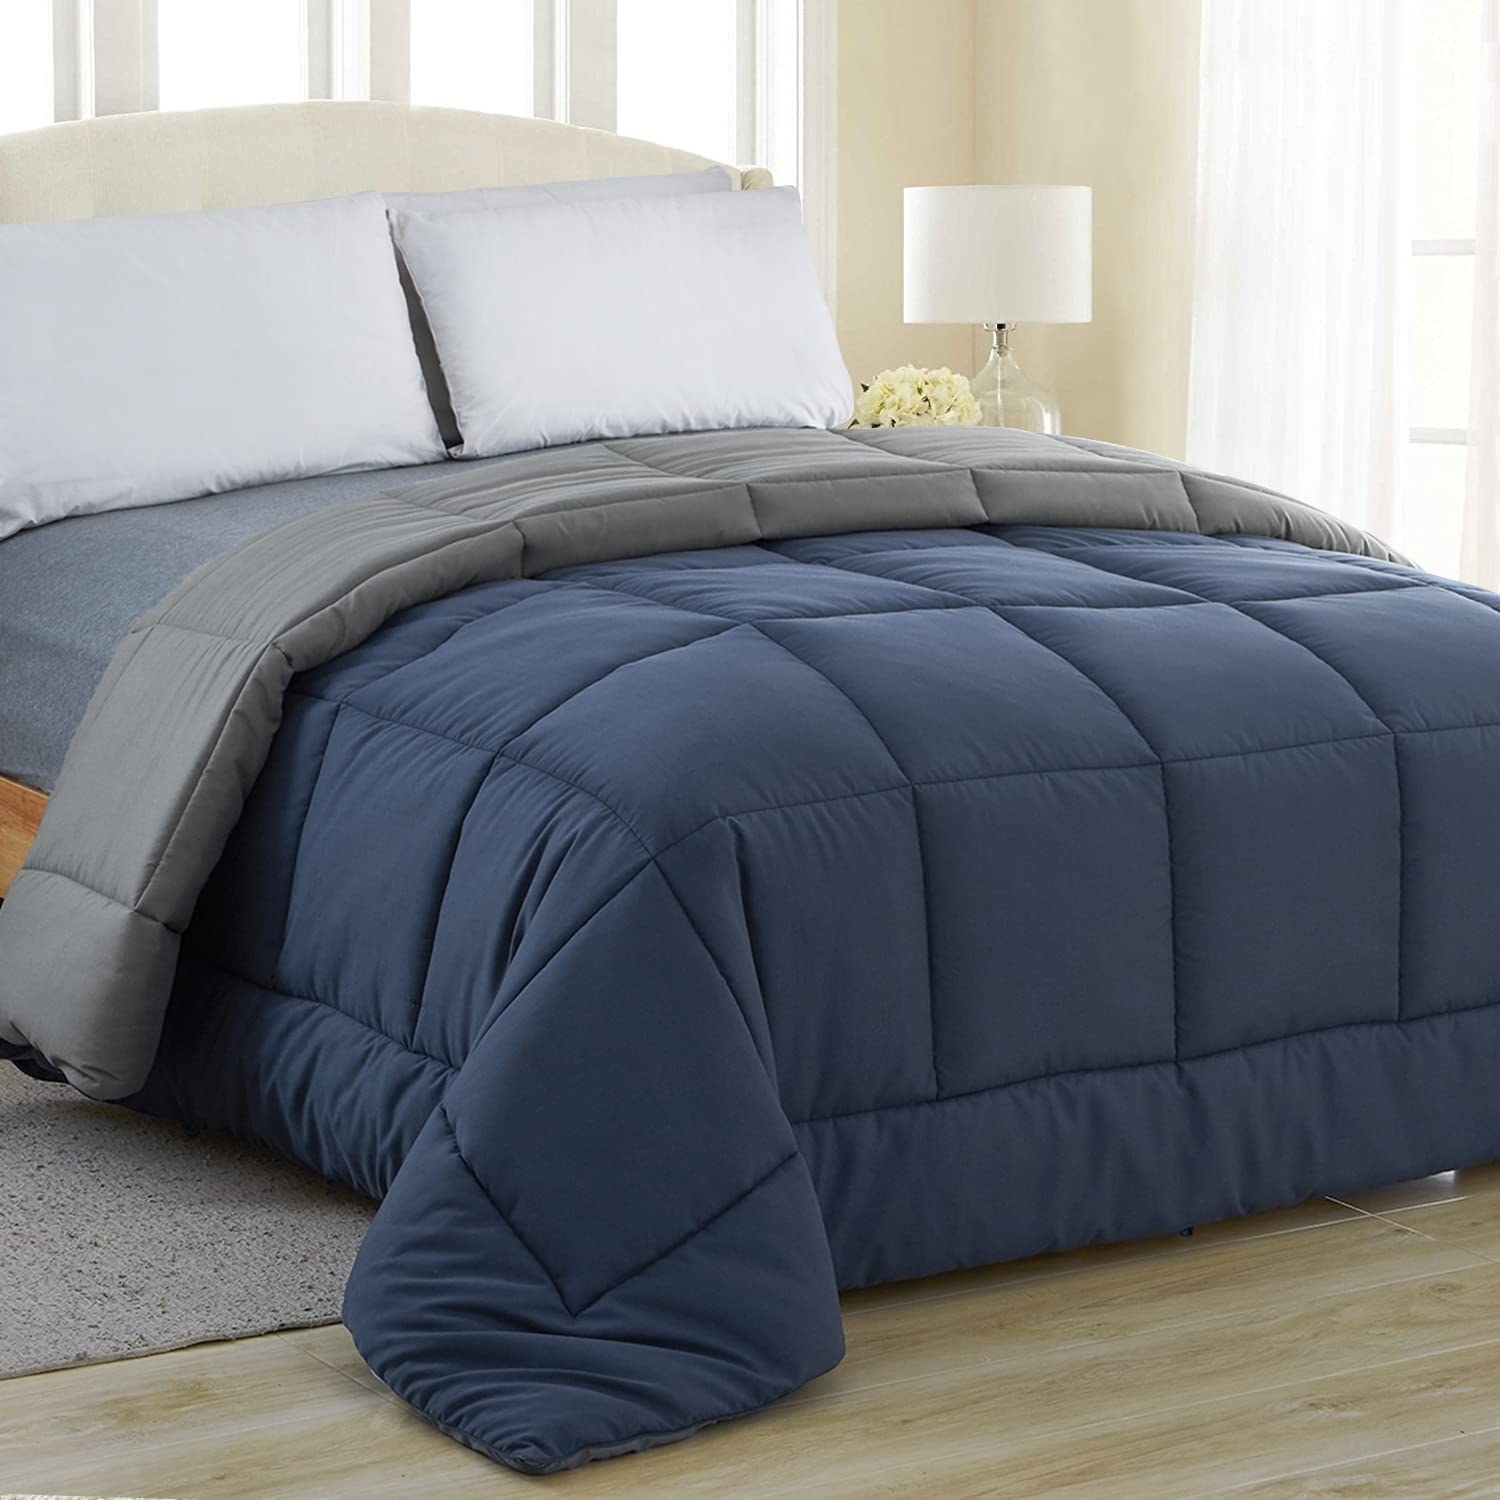 navy blue comforter and gray reversible comforter on mattress in bedroom